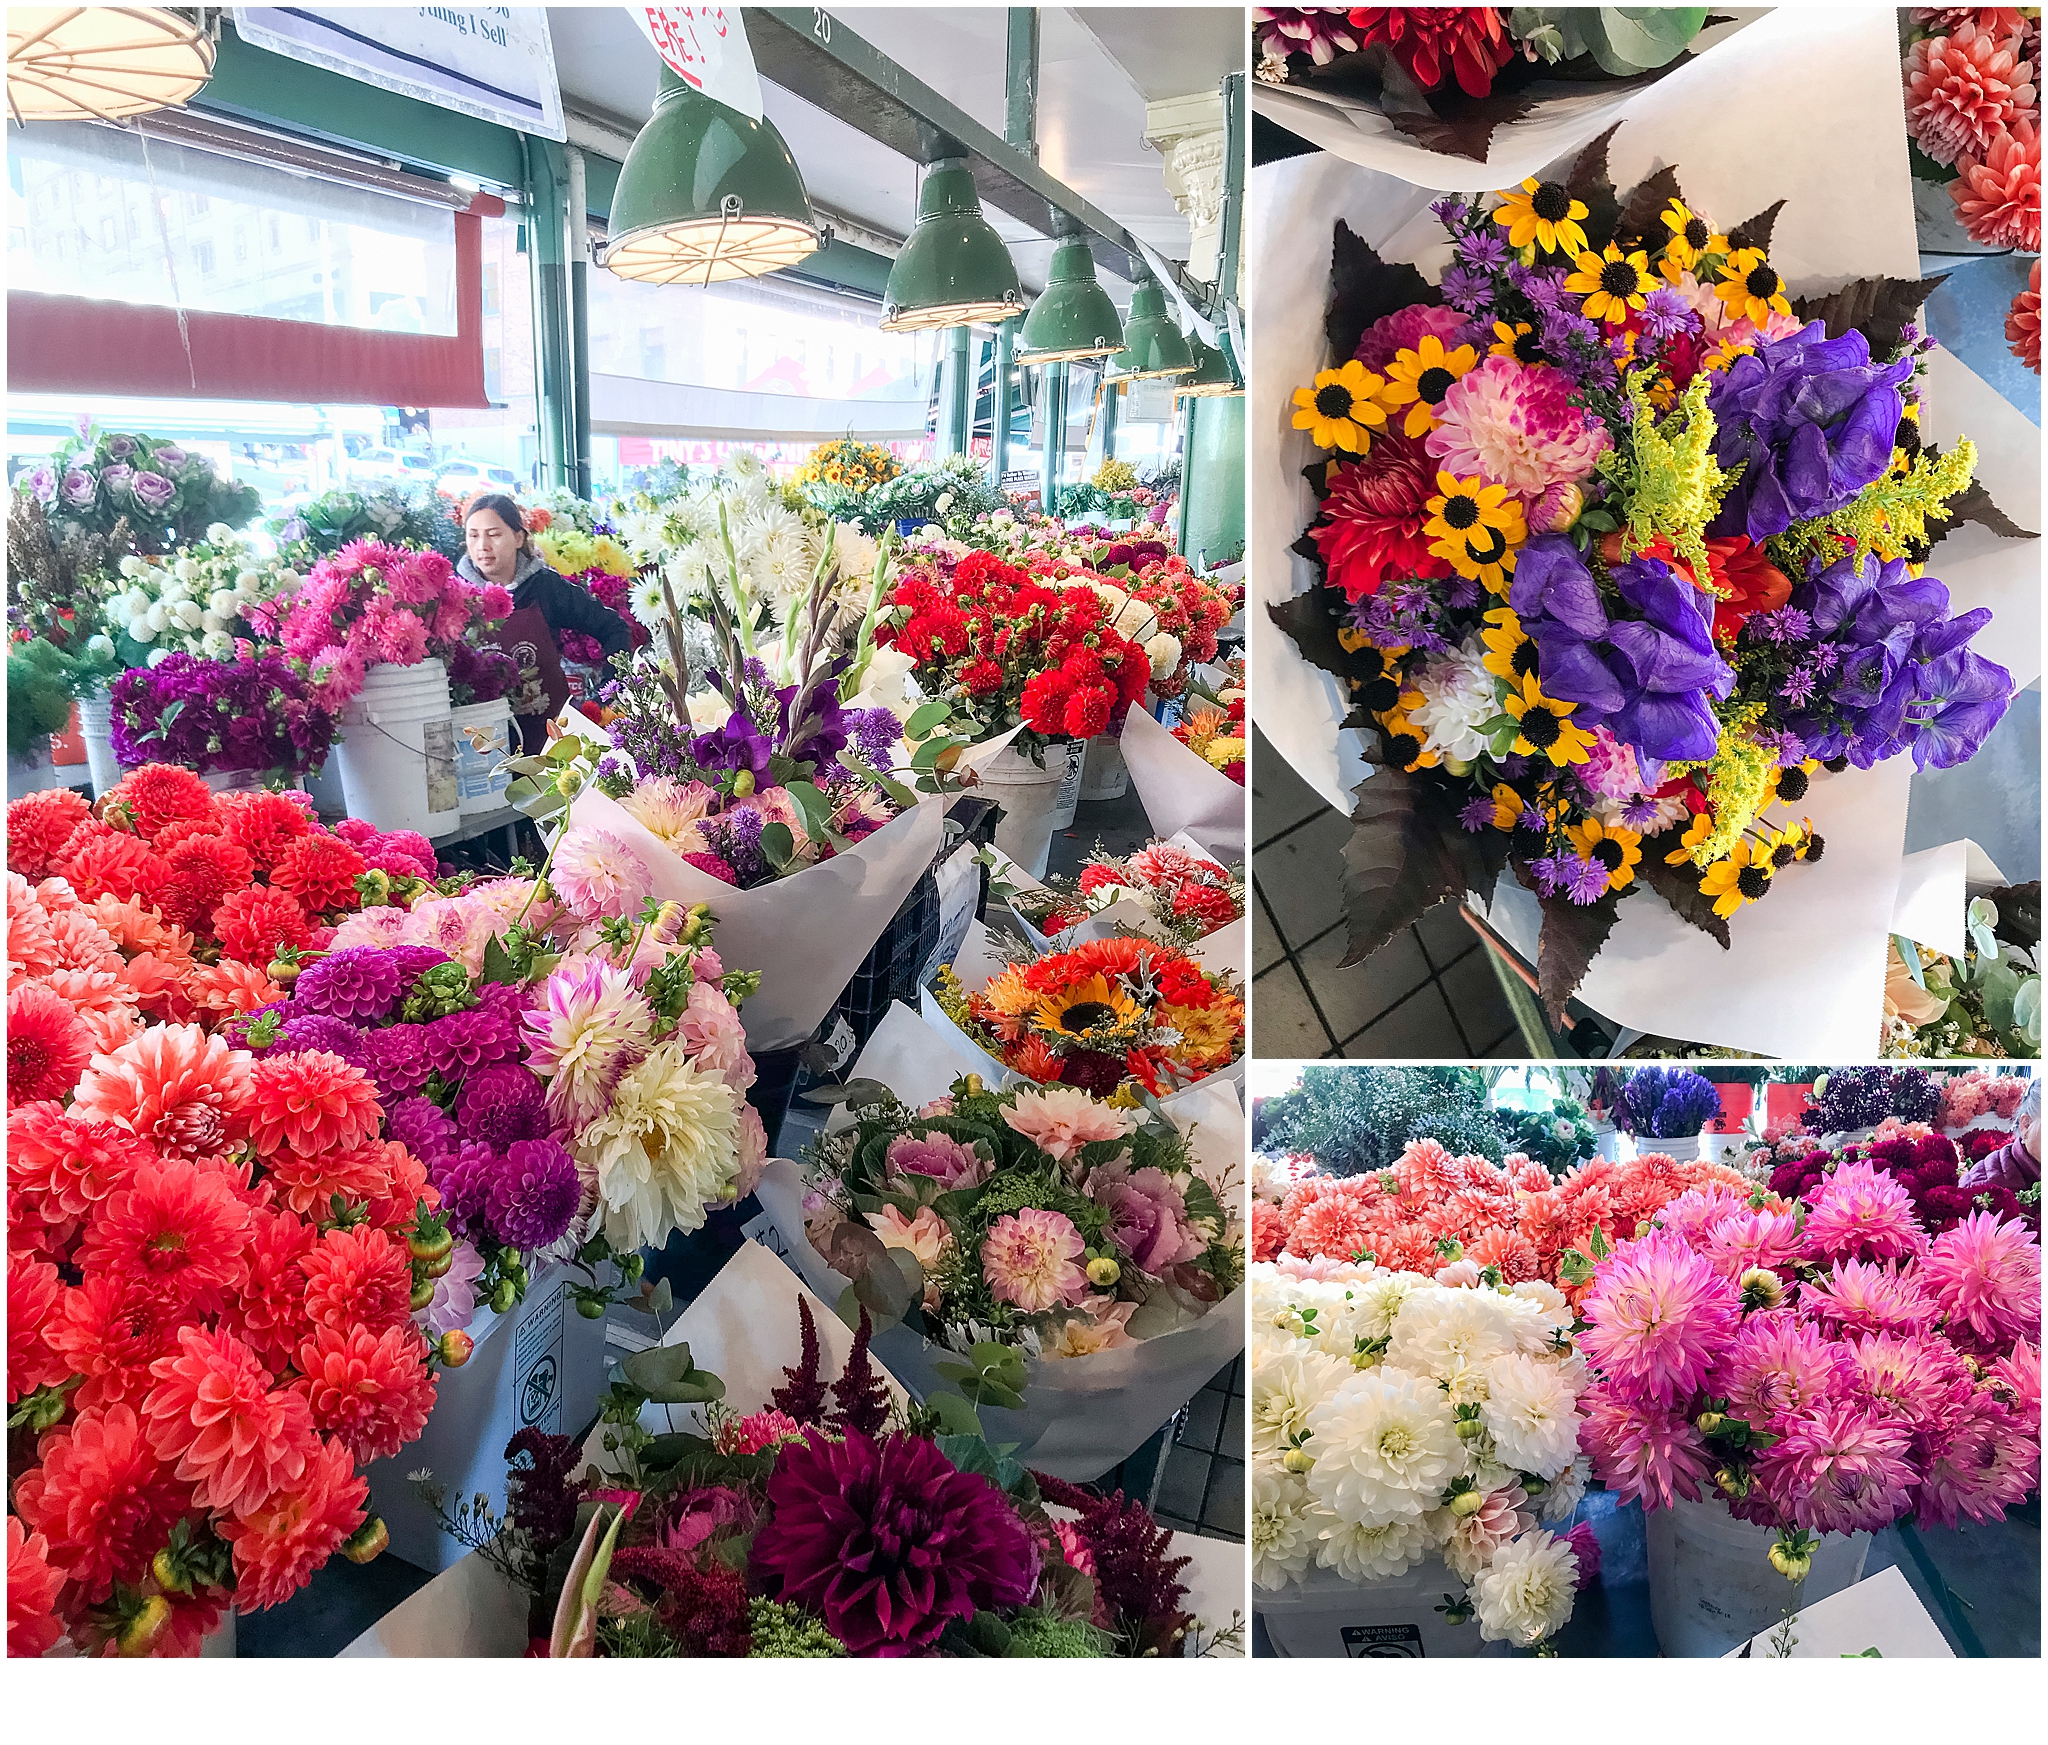 Pike Place Market Flowers, Seattle, WA